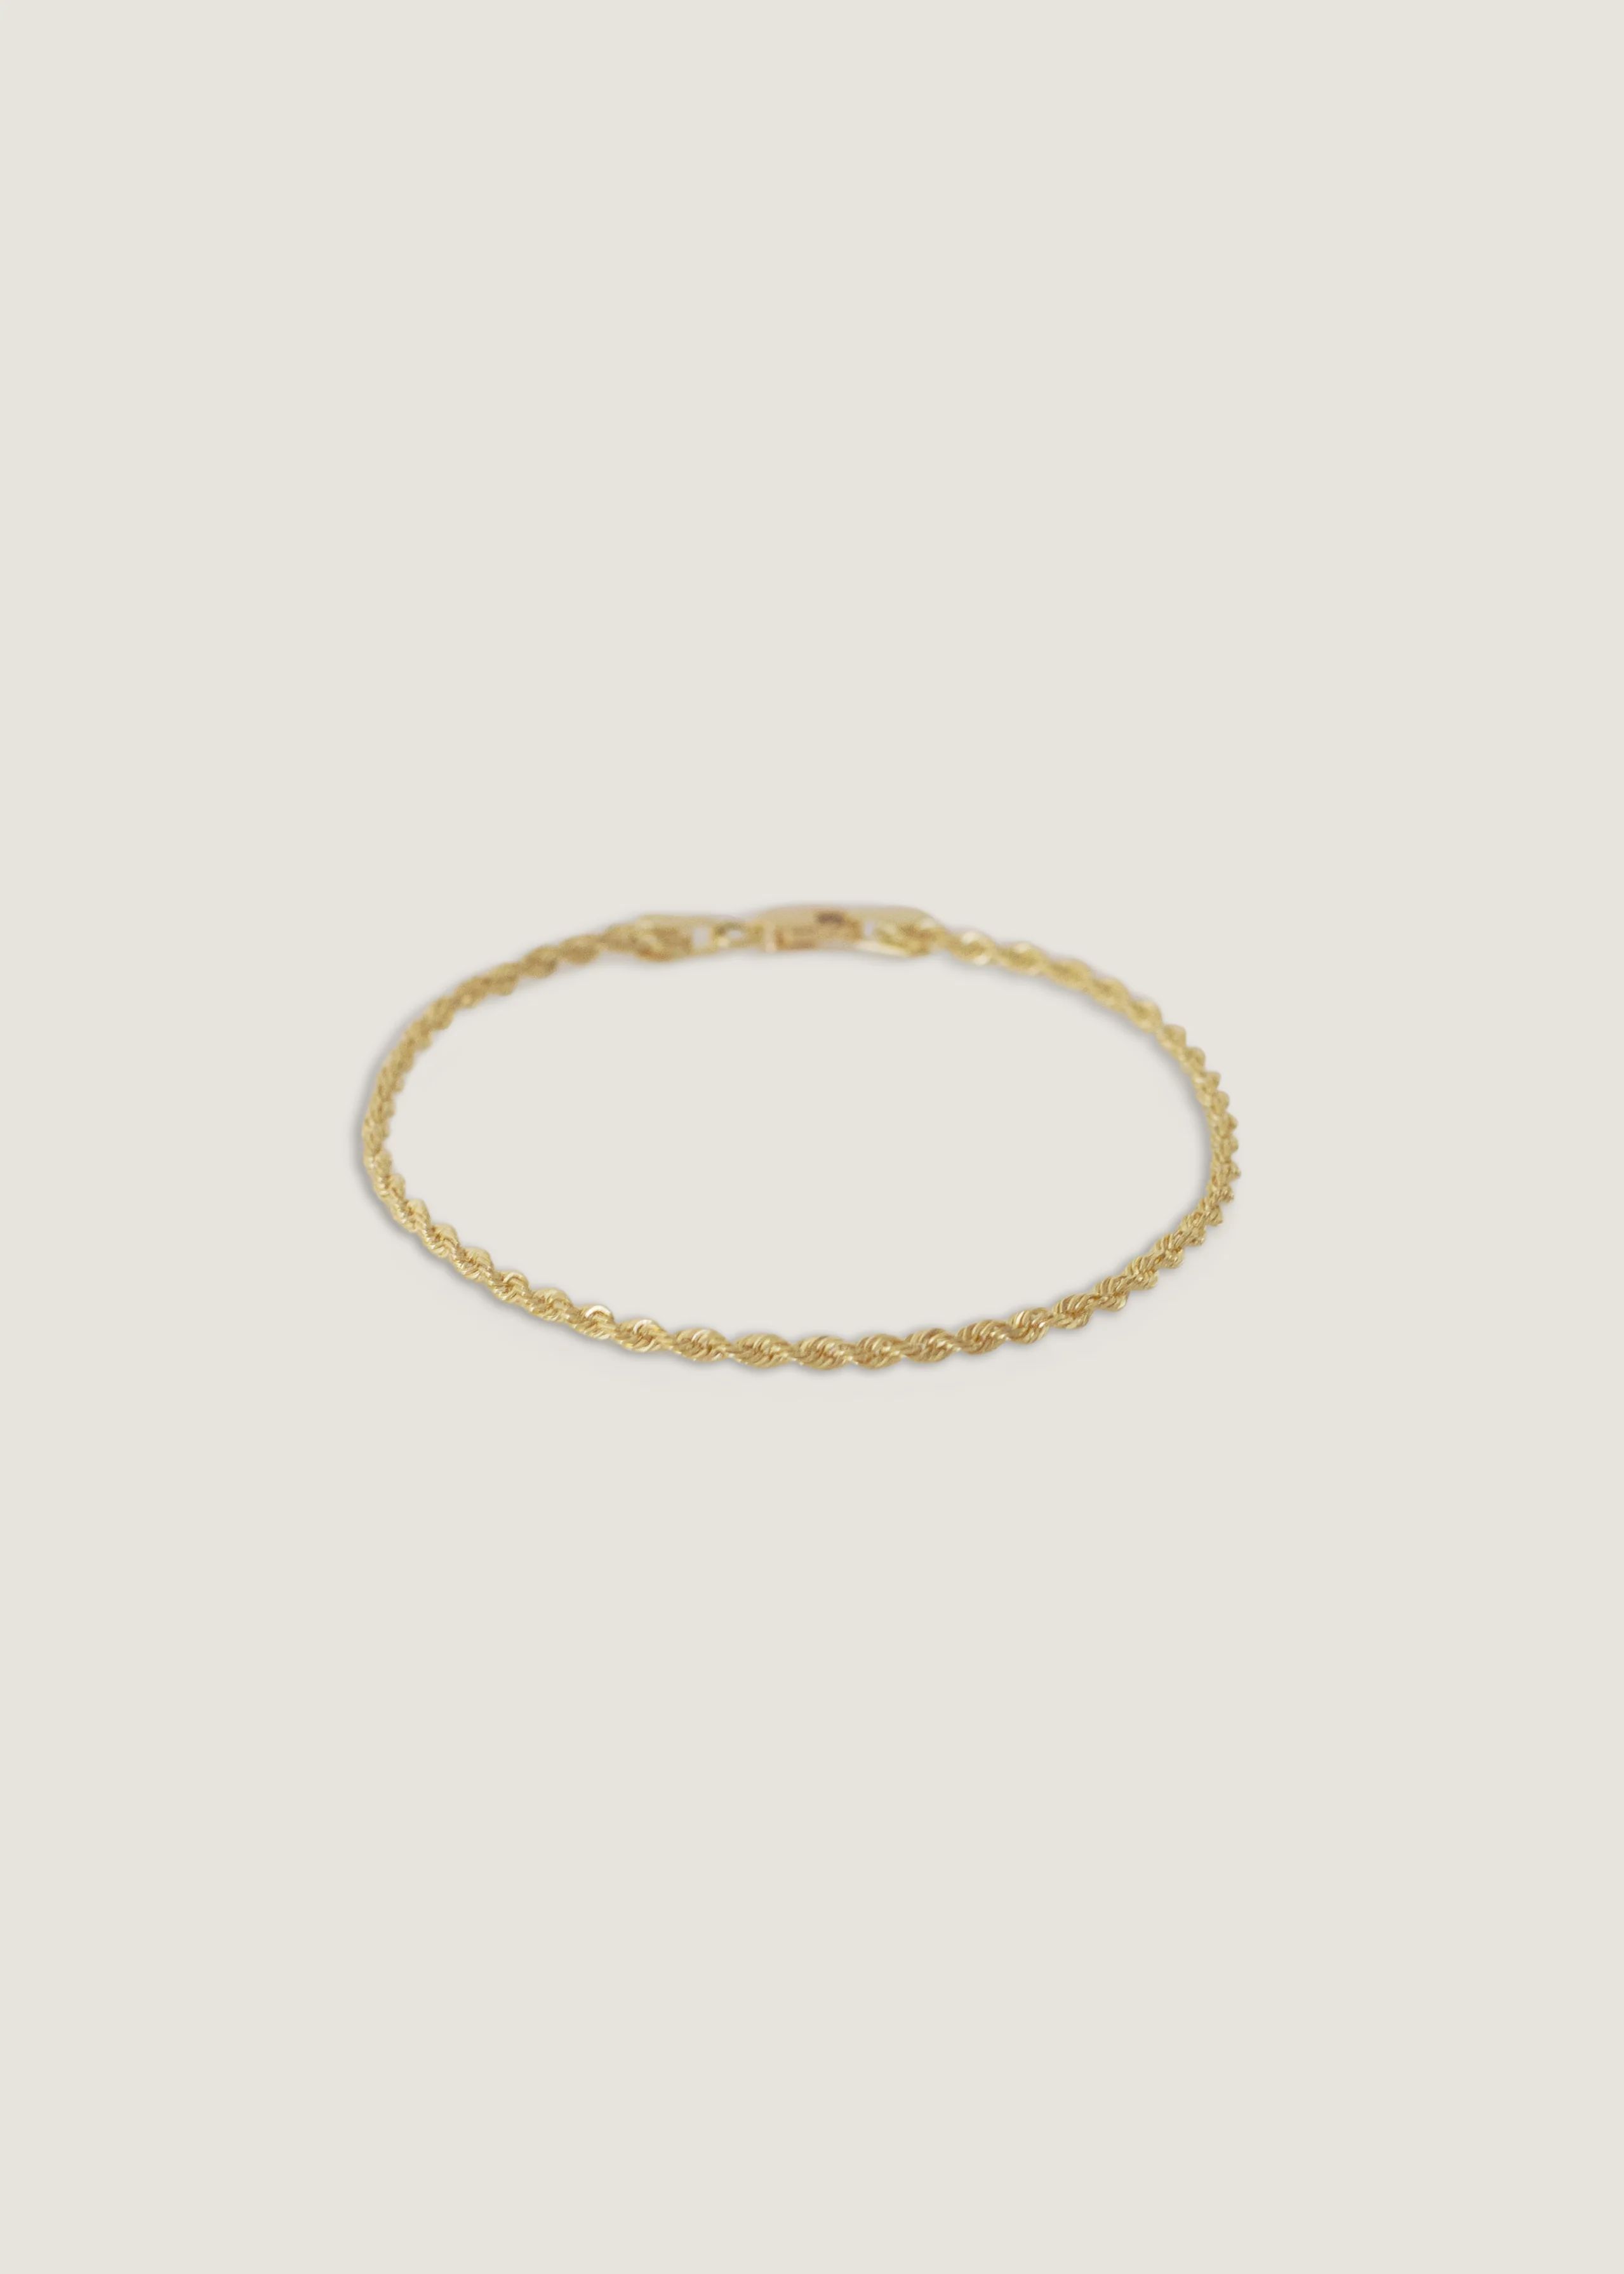 Rope Chain Bracelet 14k Gold - Kinn | Kinn